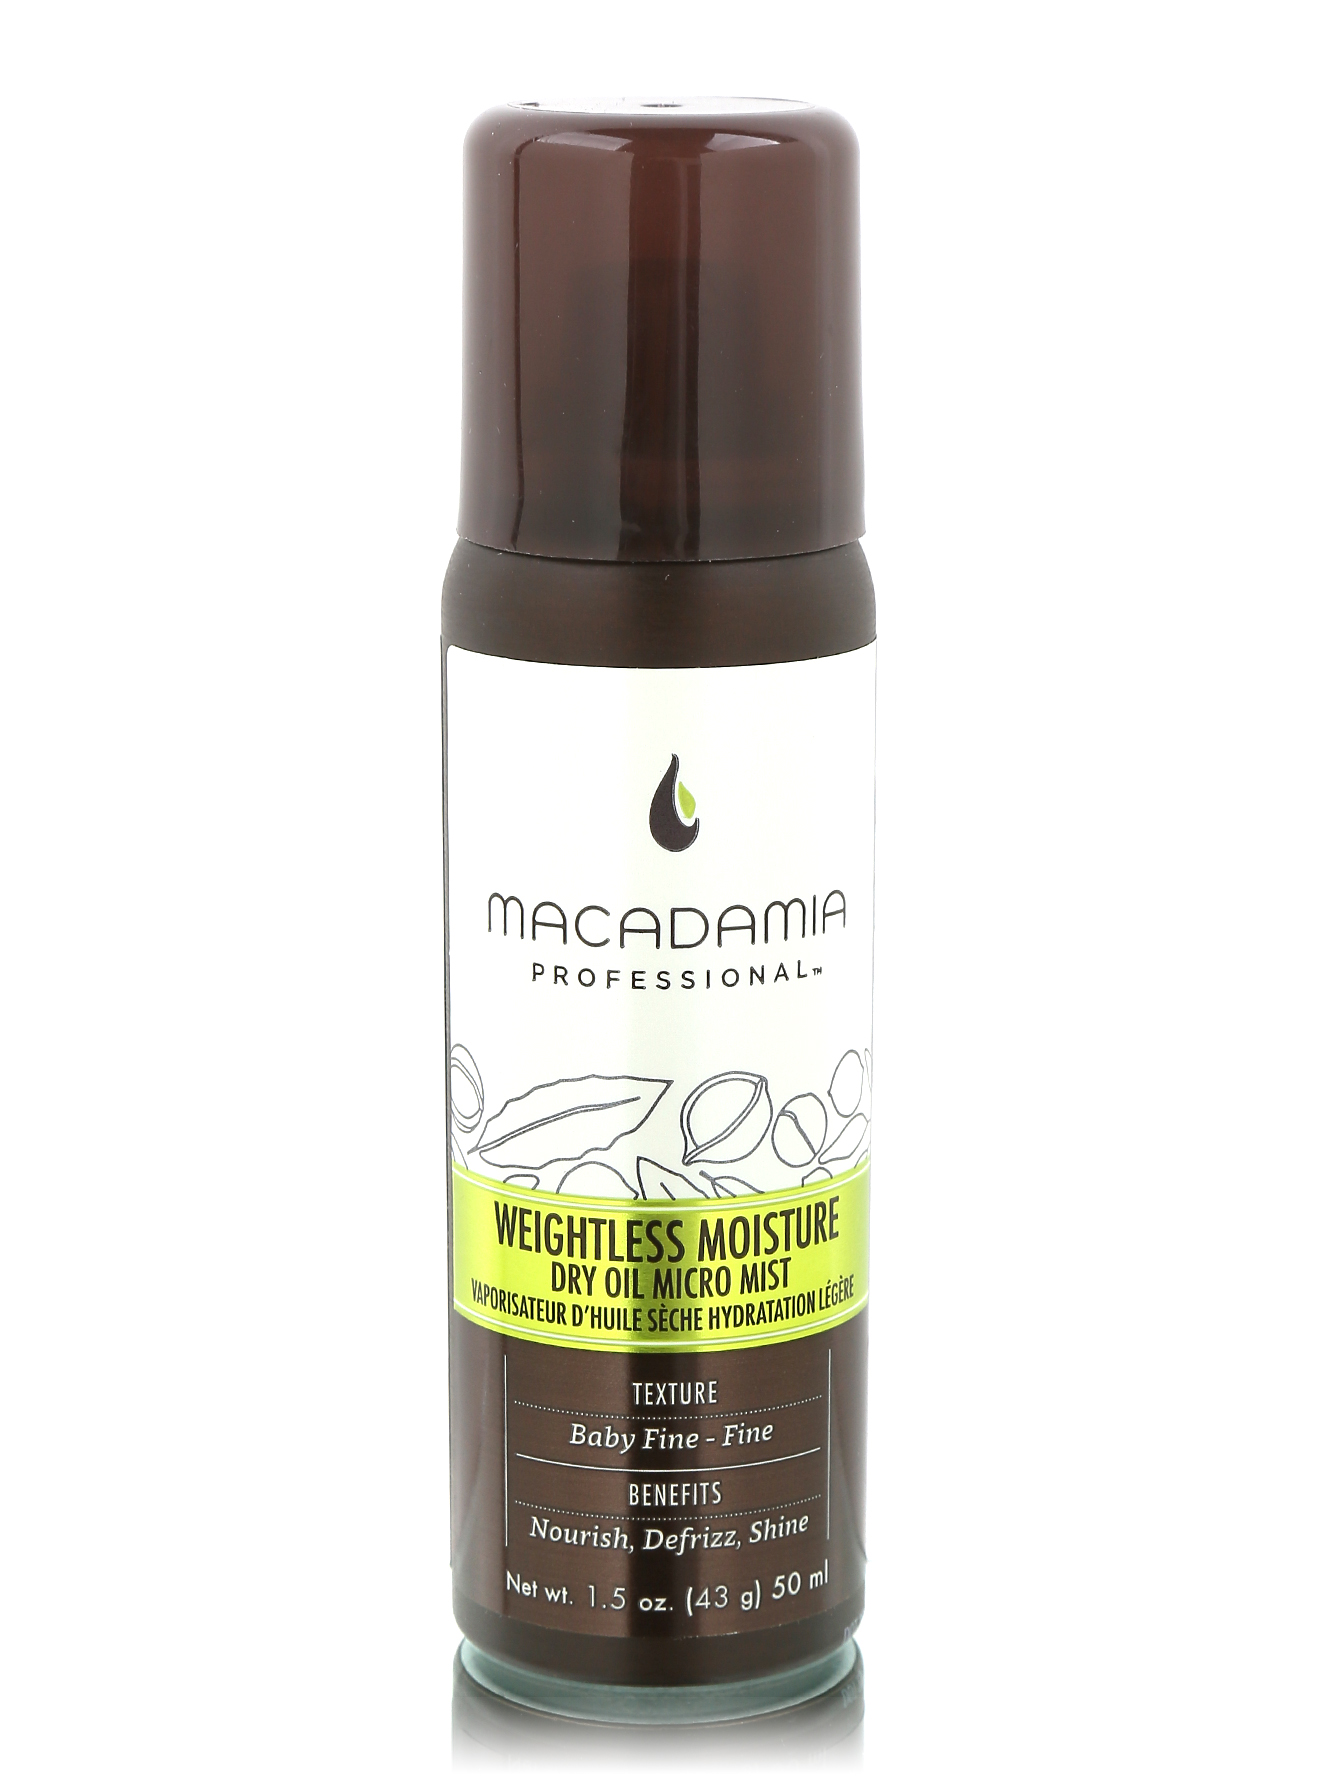 Масло для волос macadamia. Macadamia natural Oil масло-спрей для волос. Micro Mist для волос. Сухое масло спрей для волос. Макадамия масло для тонких волос.